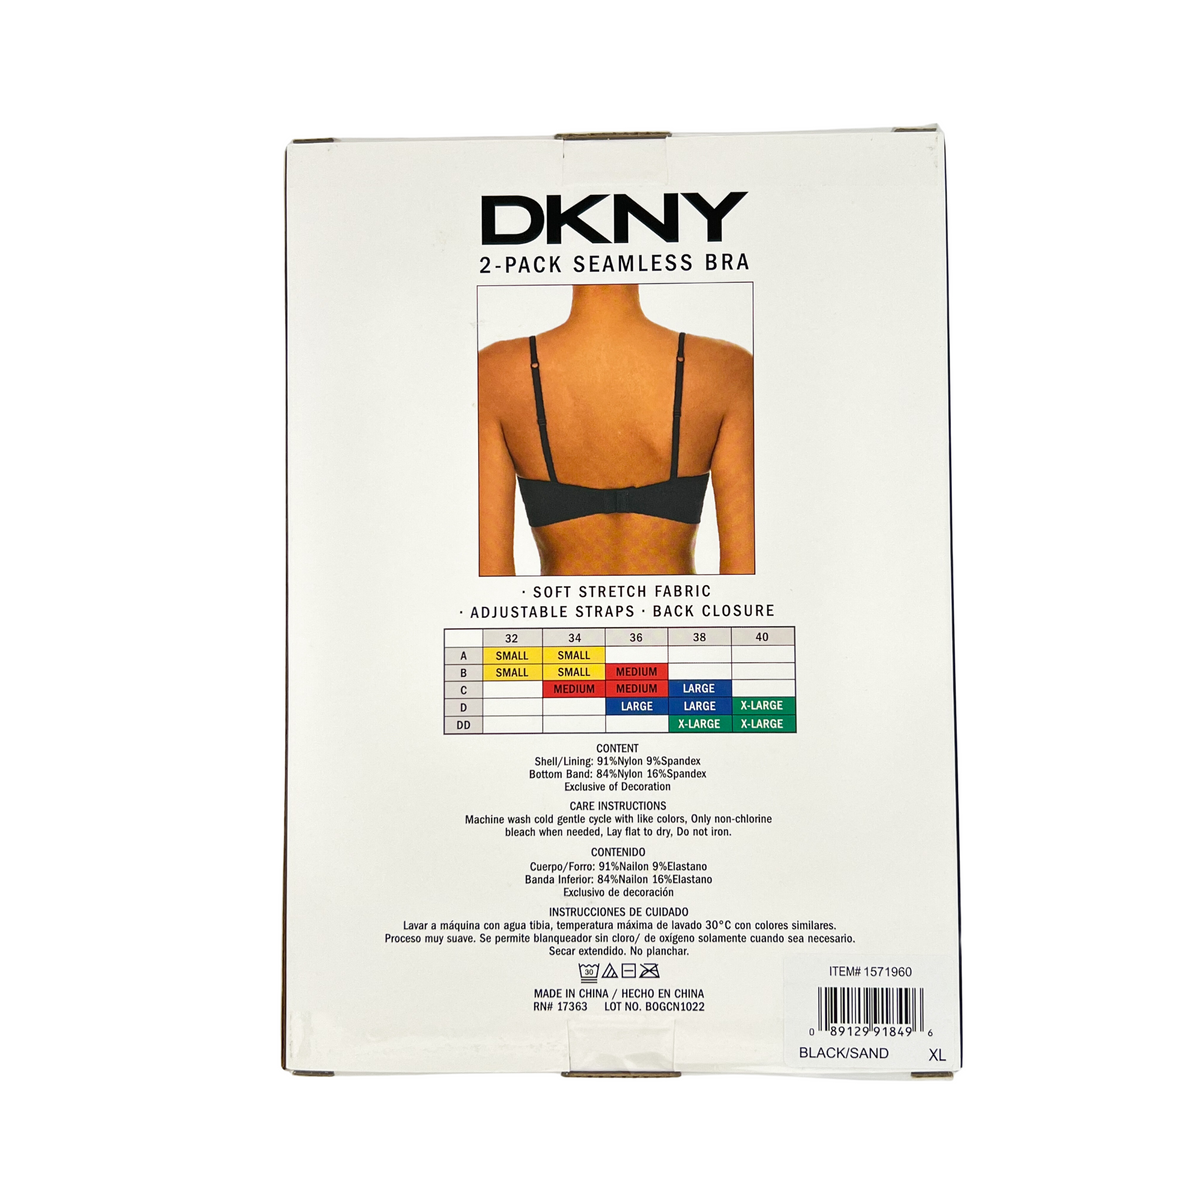 DKNY Ladies' Seamless Bralette, 2 Pack